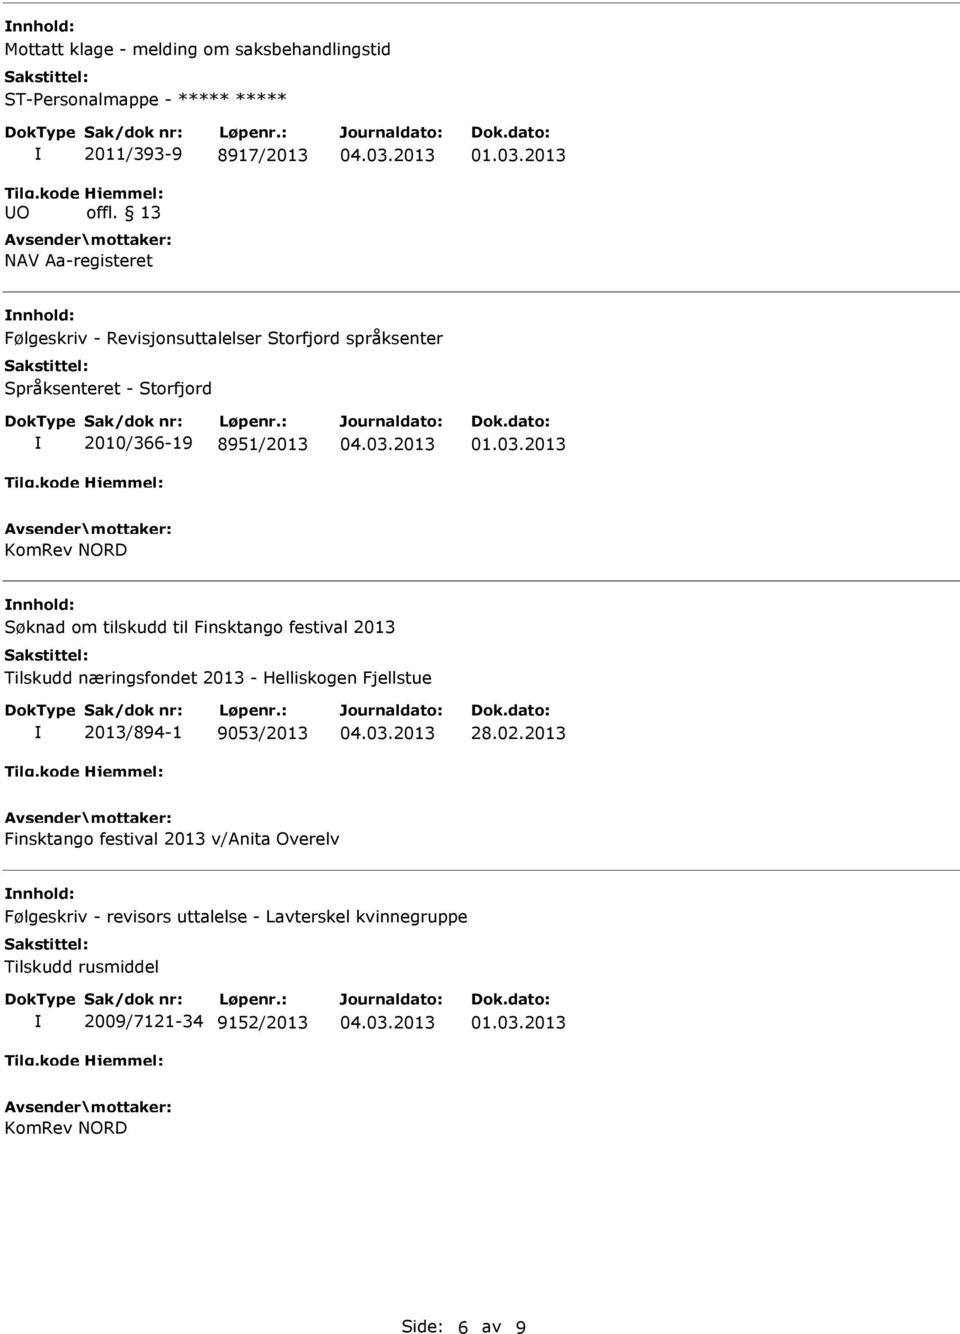 2013 Tilskudd næringsfondet 2013 - Helliskogen Fjellstue 2013/894-1 9053/2013 28.02.